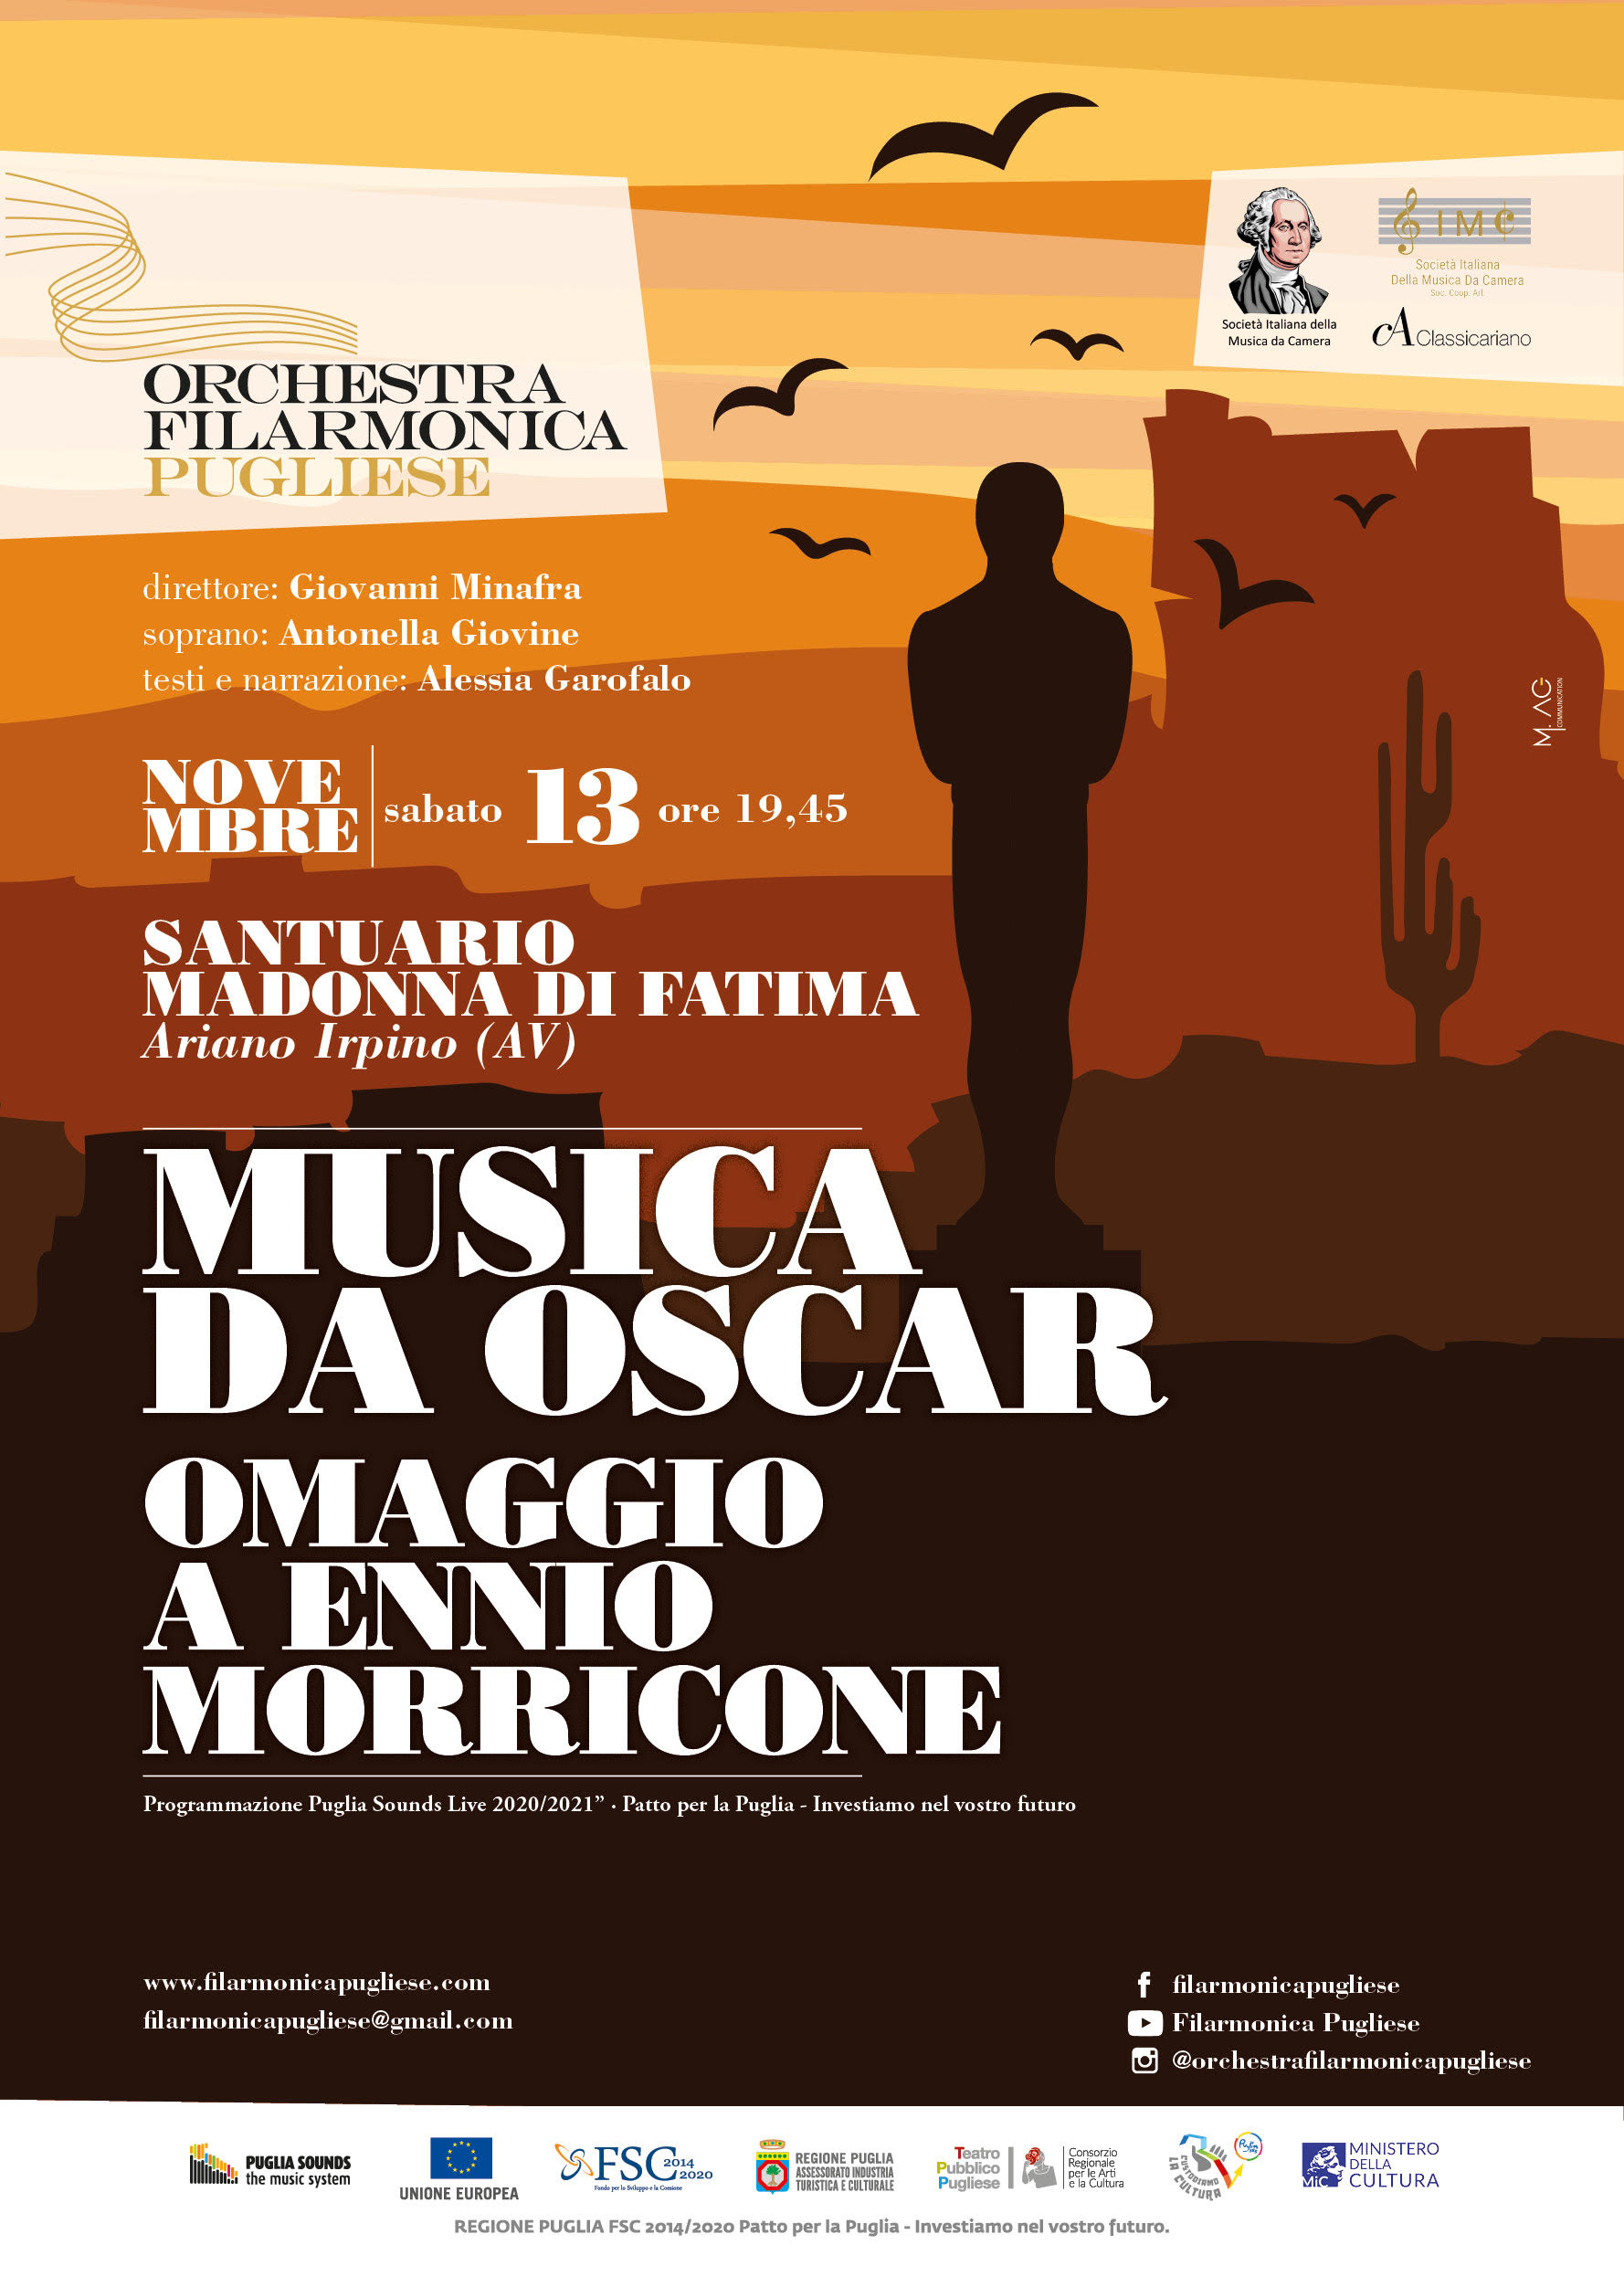 Ariano Irpino: Musica da Oscar, Orchestra Filarmonica Pugliese con omaggio a Morricone